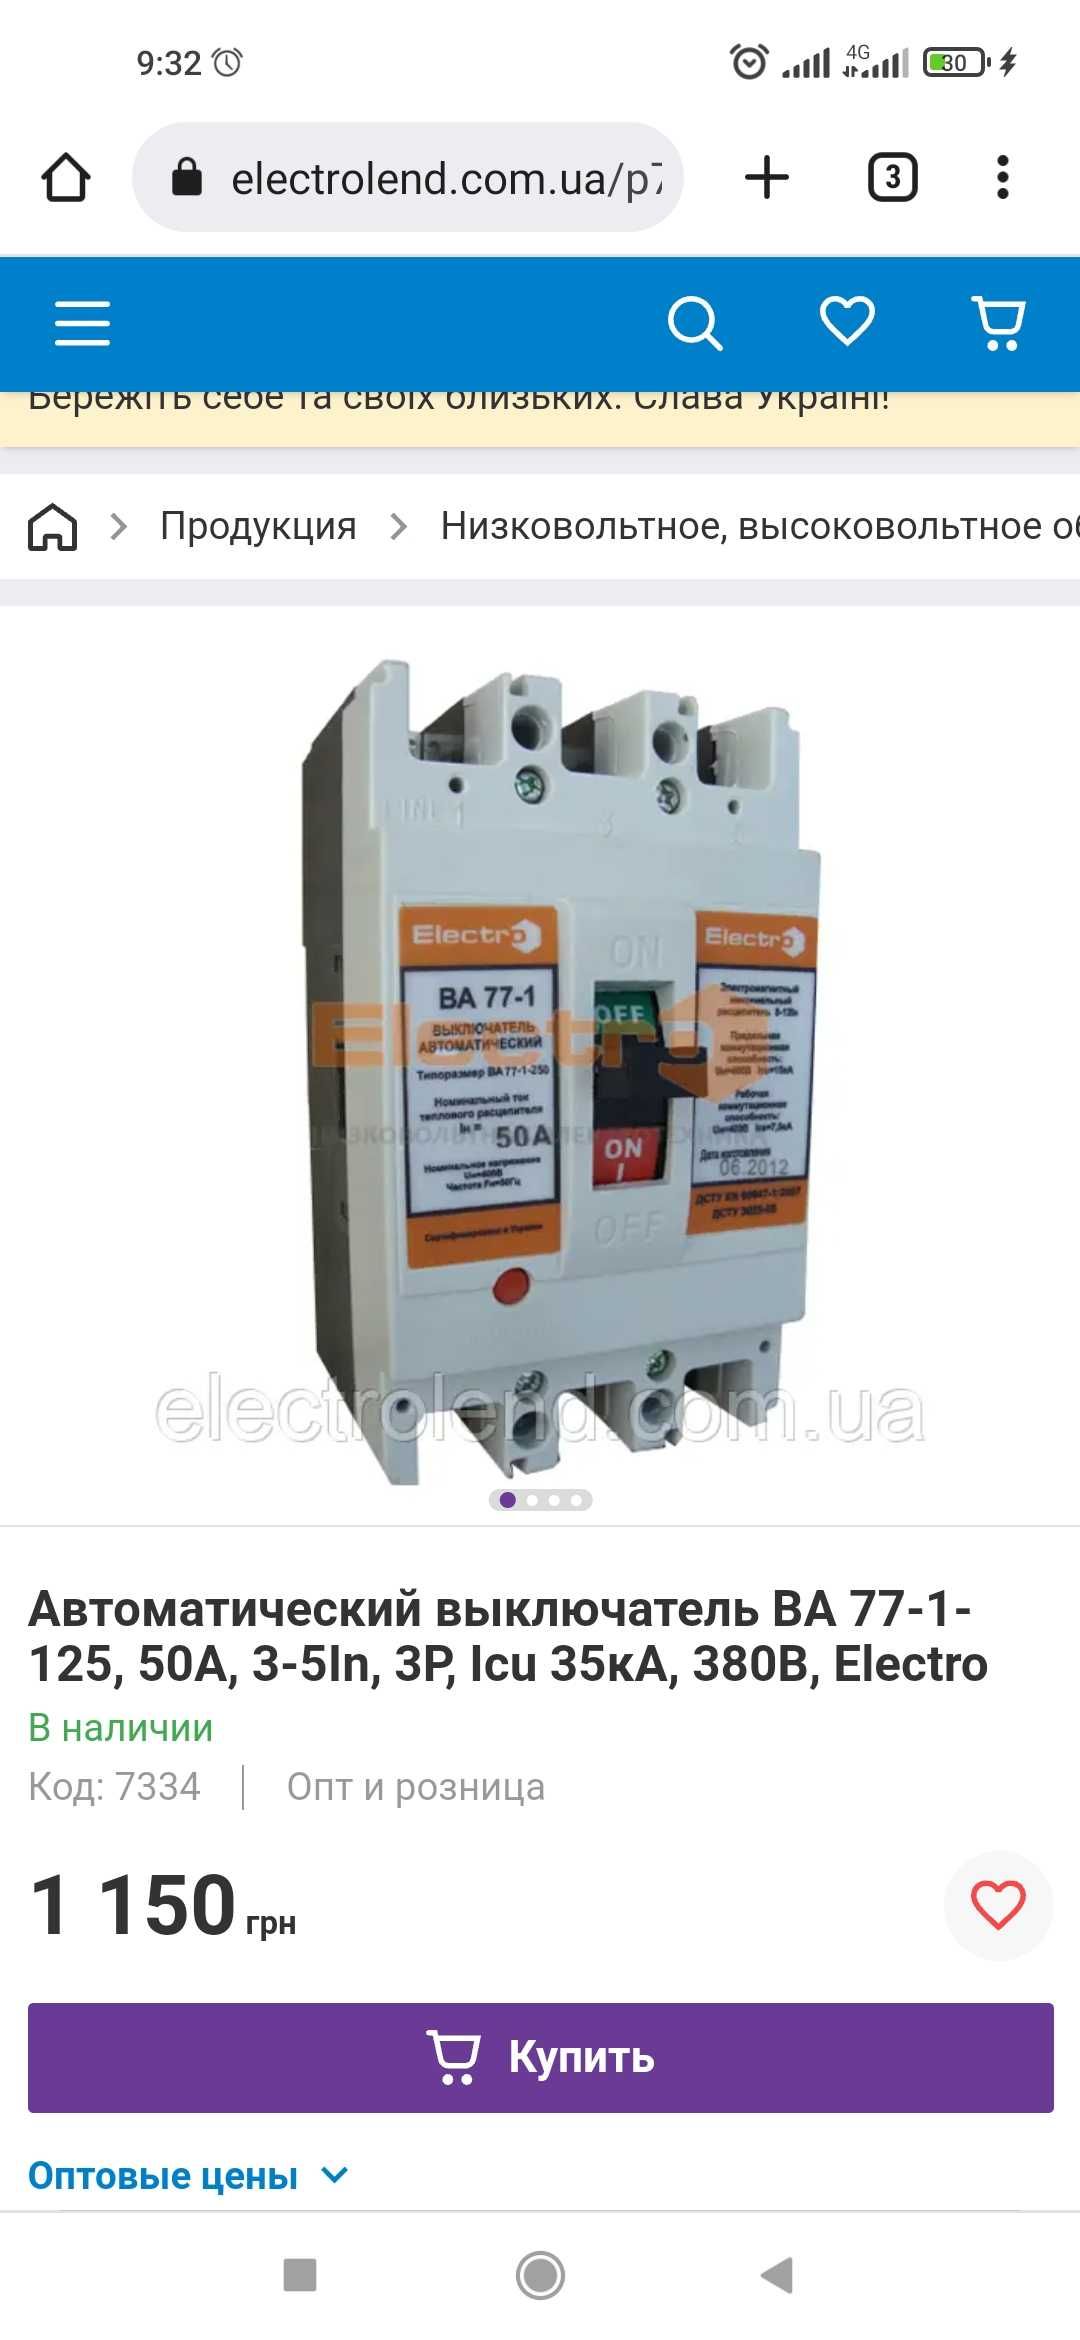 Автом.выключатель Electro 50A ВА77-1-125 новый